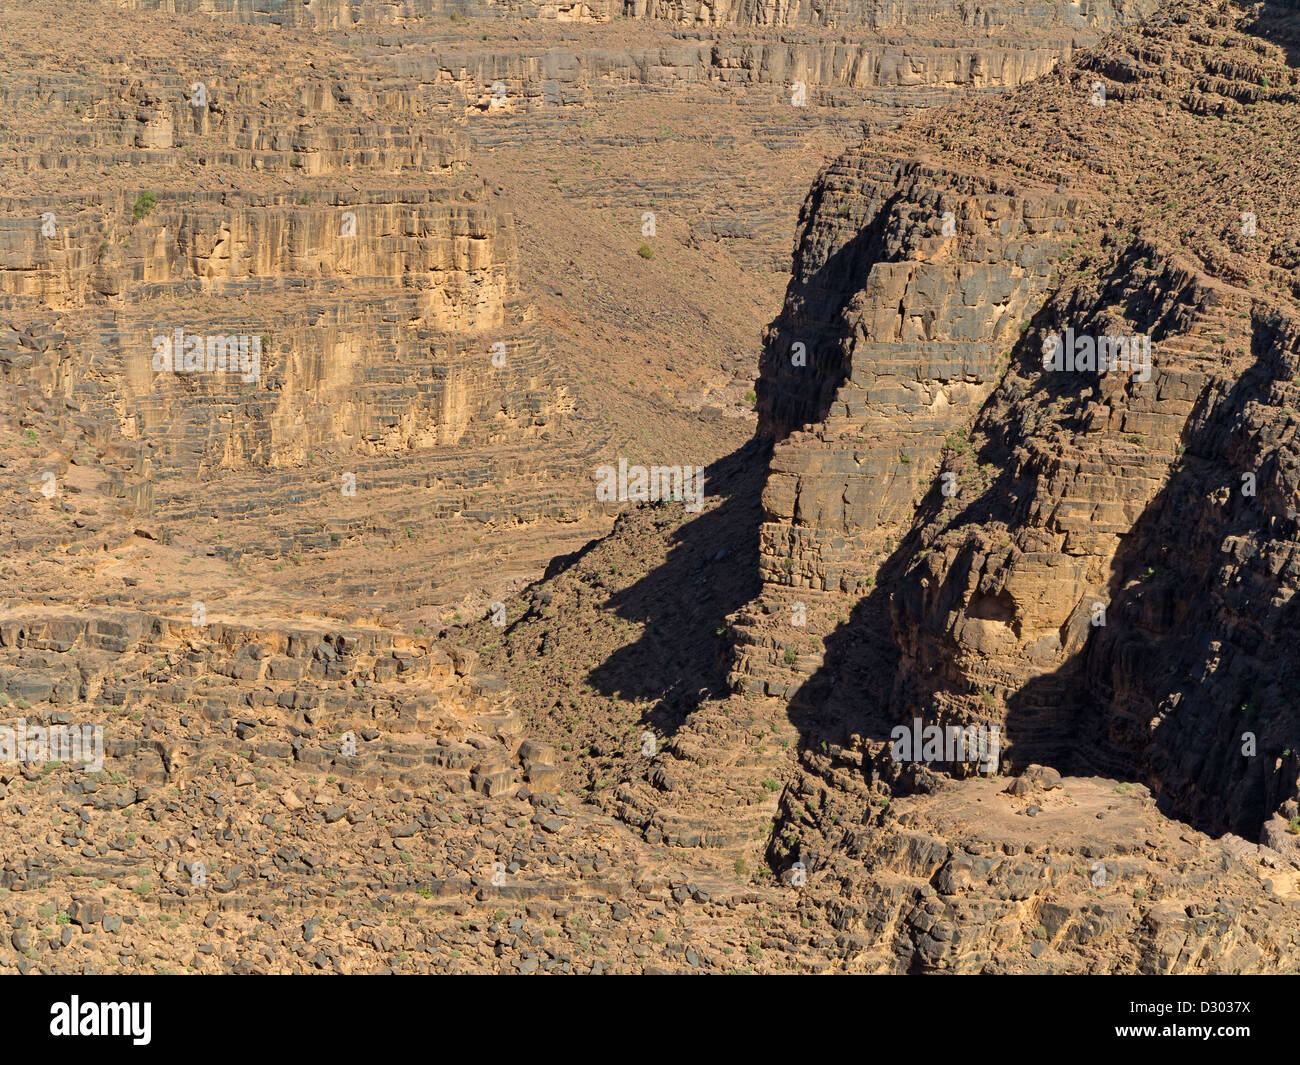 Gorges et canyons sur la route entre Ouarzazate et Marrakech, Maroc, Afrique du Nord Banque D'Images